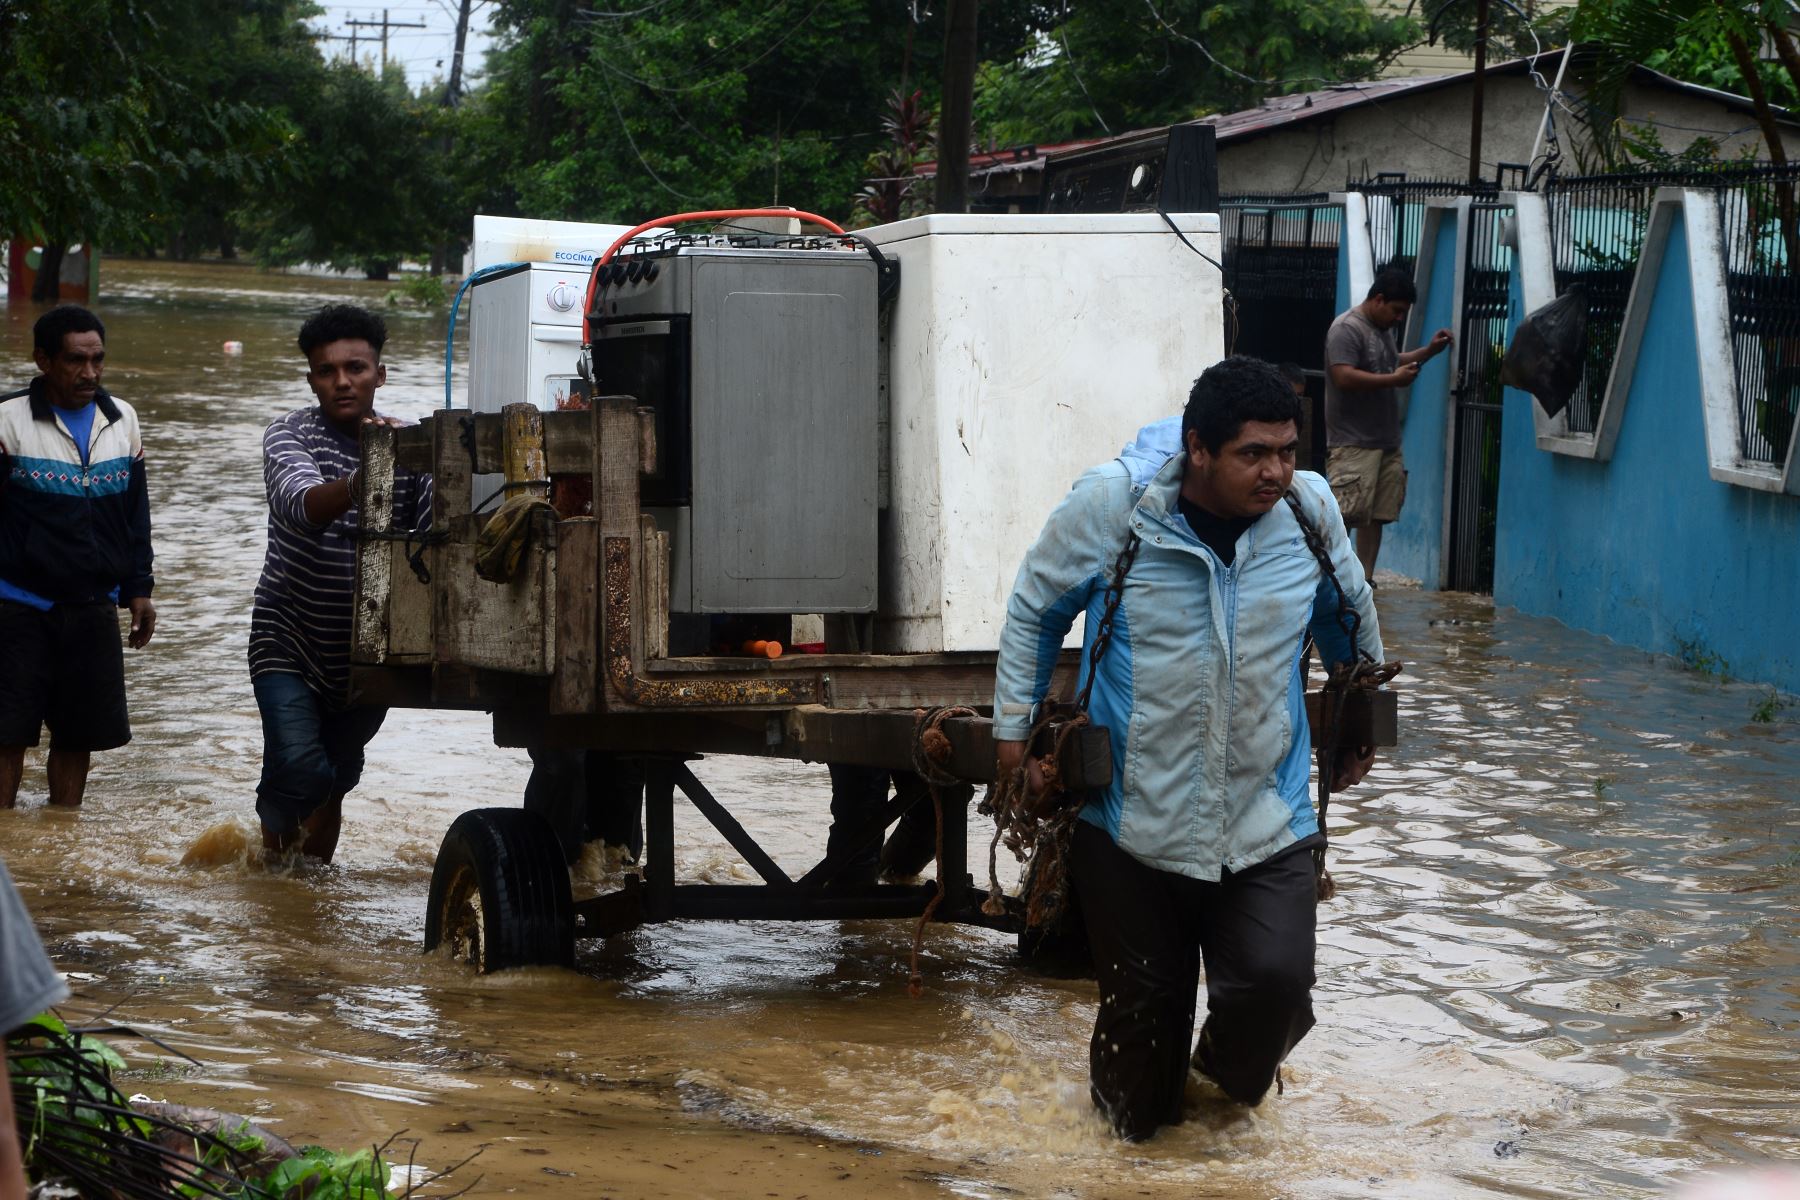 Residentes locales rescatan sus pertenencias luego del desborde del río Ulúa en el municipio de El Progreso, departamento de Yoro, Honduras debido a las fuertes lluvias provocadas por el huracán Eta.
Foto: AFP